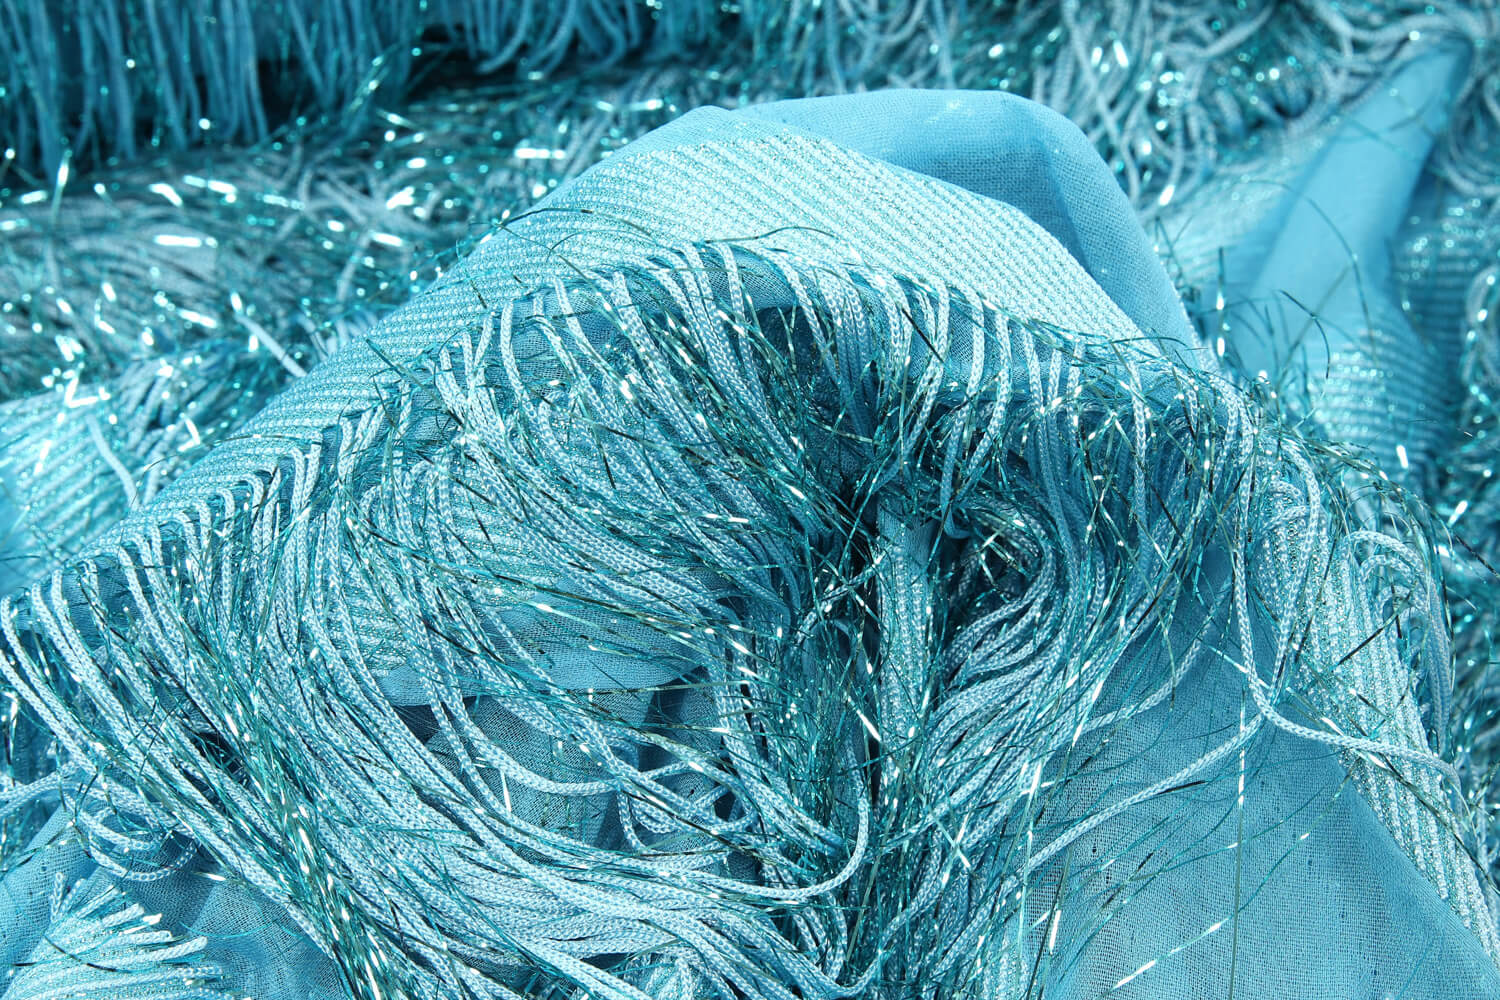 Шелк с люрексовой бахромой Gucci, цвет Голубой, фото 1